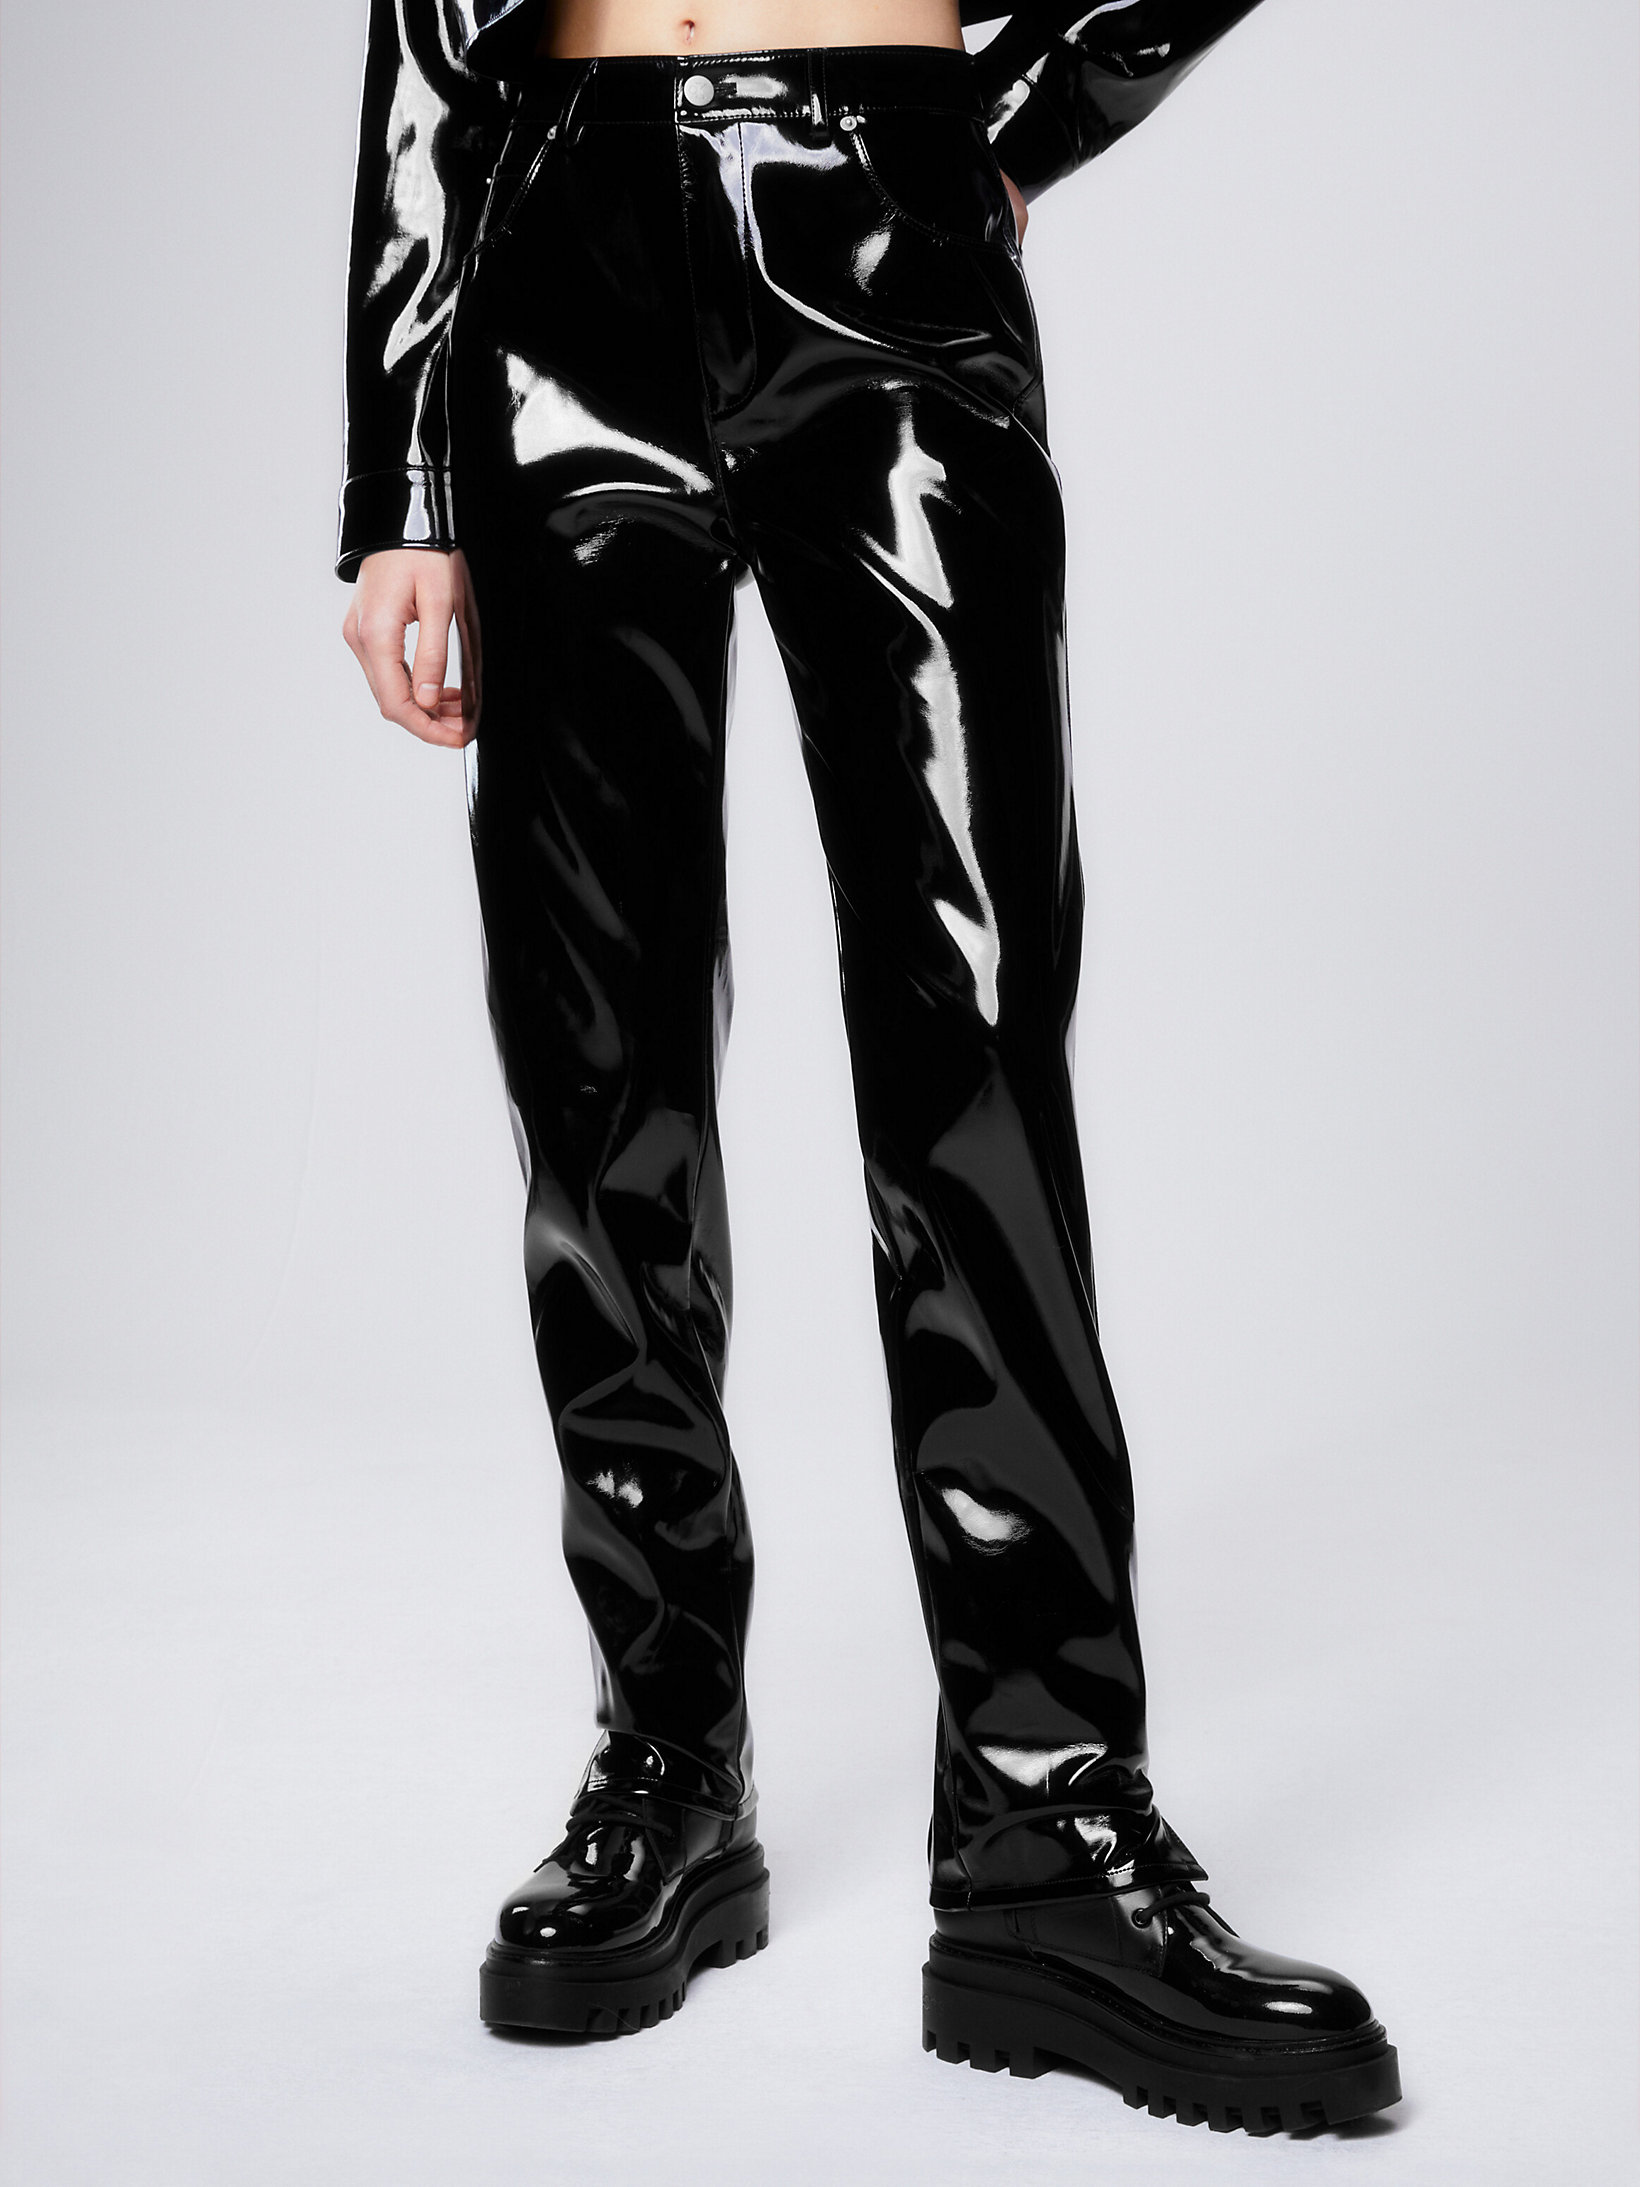 CK Black > Bardzo Błyszczące Spodnie Ze Sztucznej Skóry > undefined Kobiety - Calvin Klein